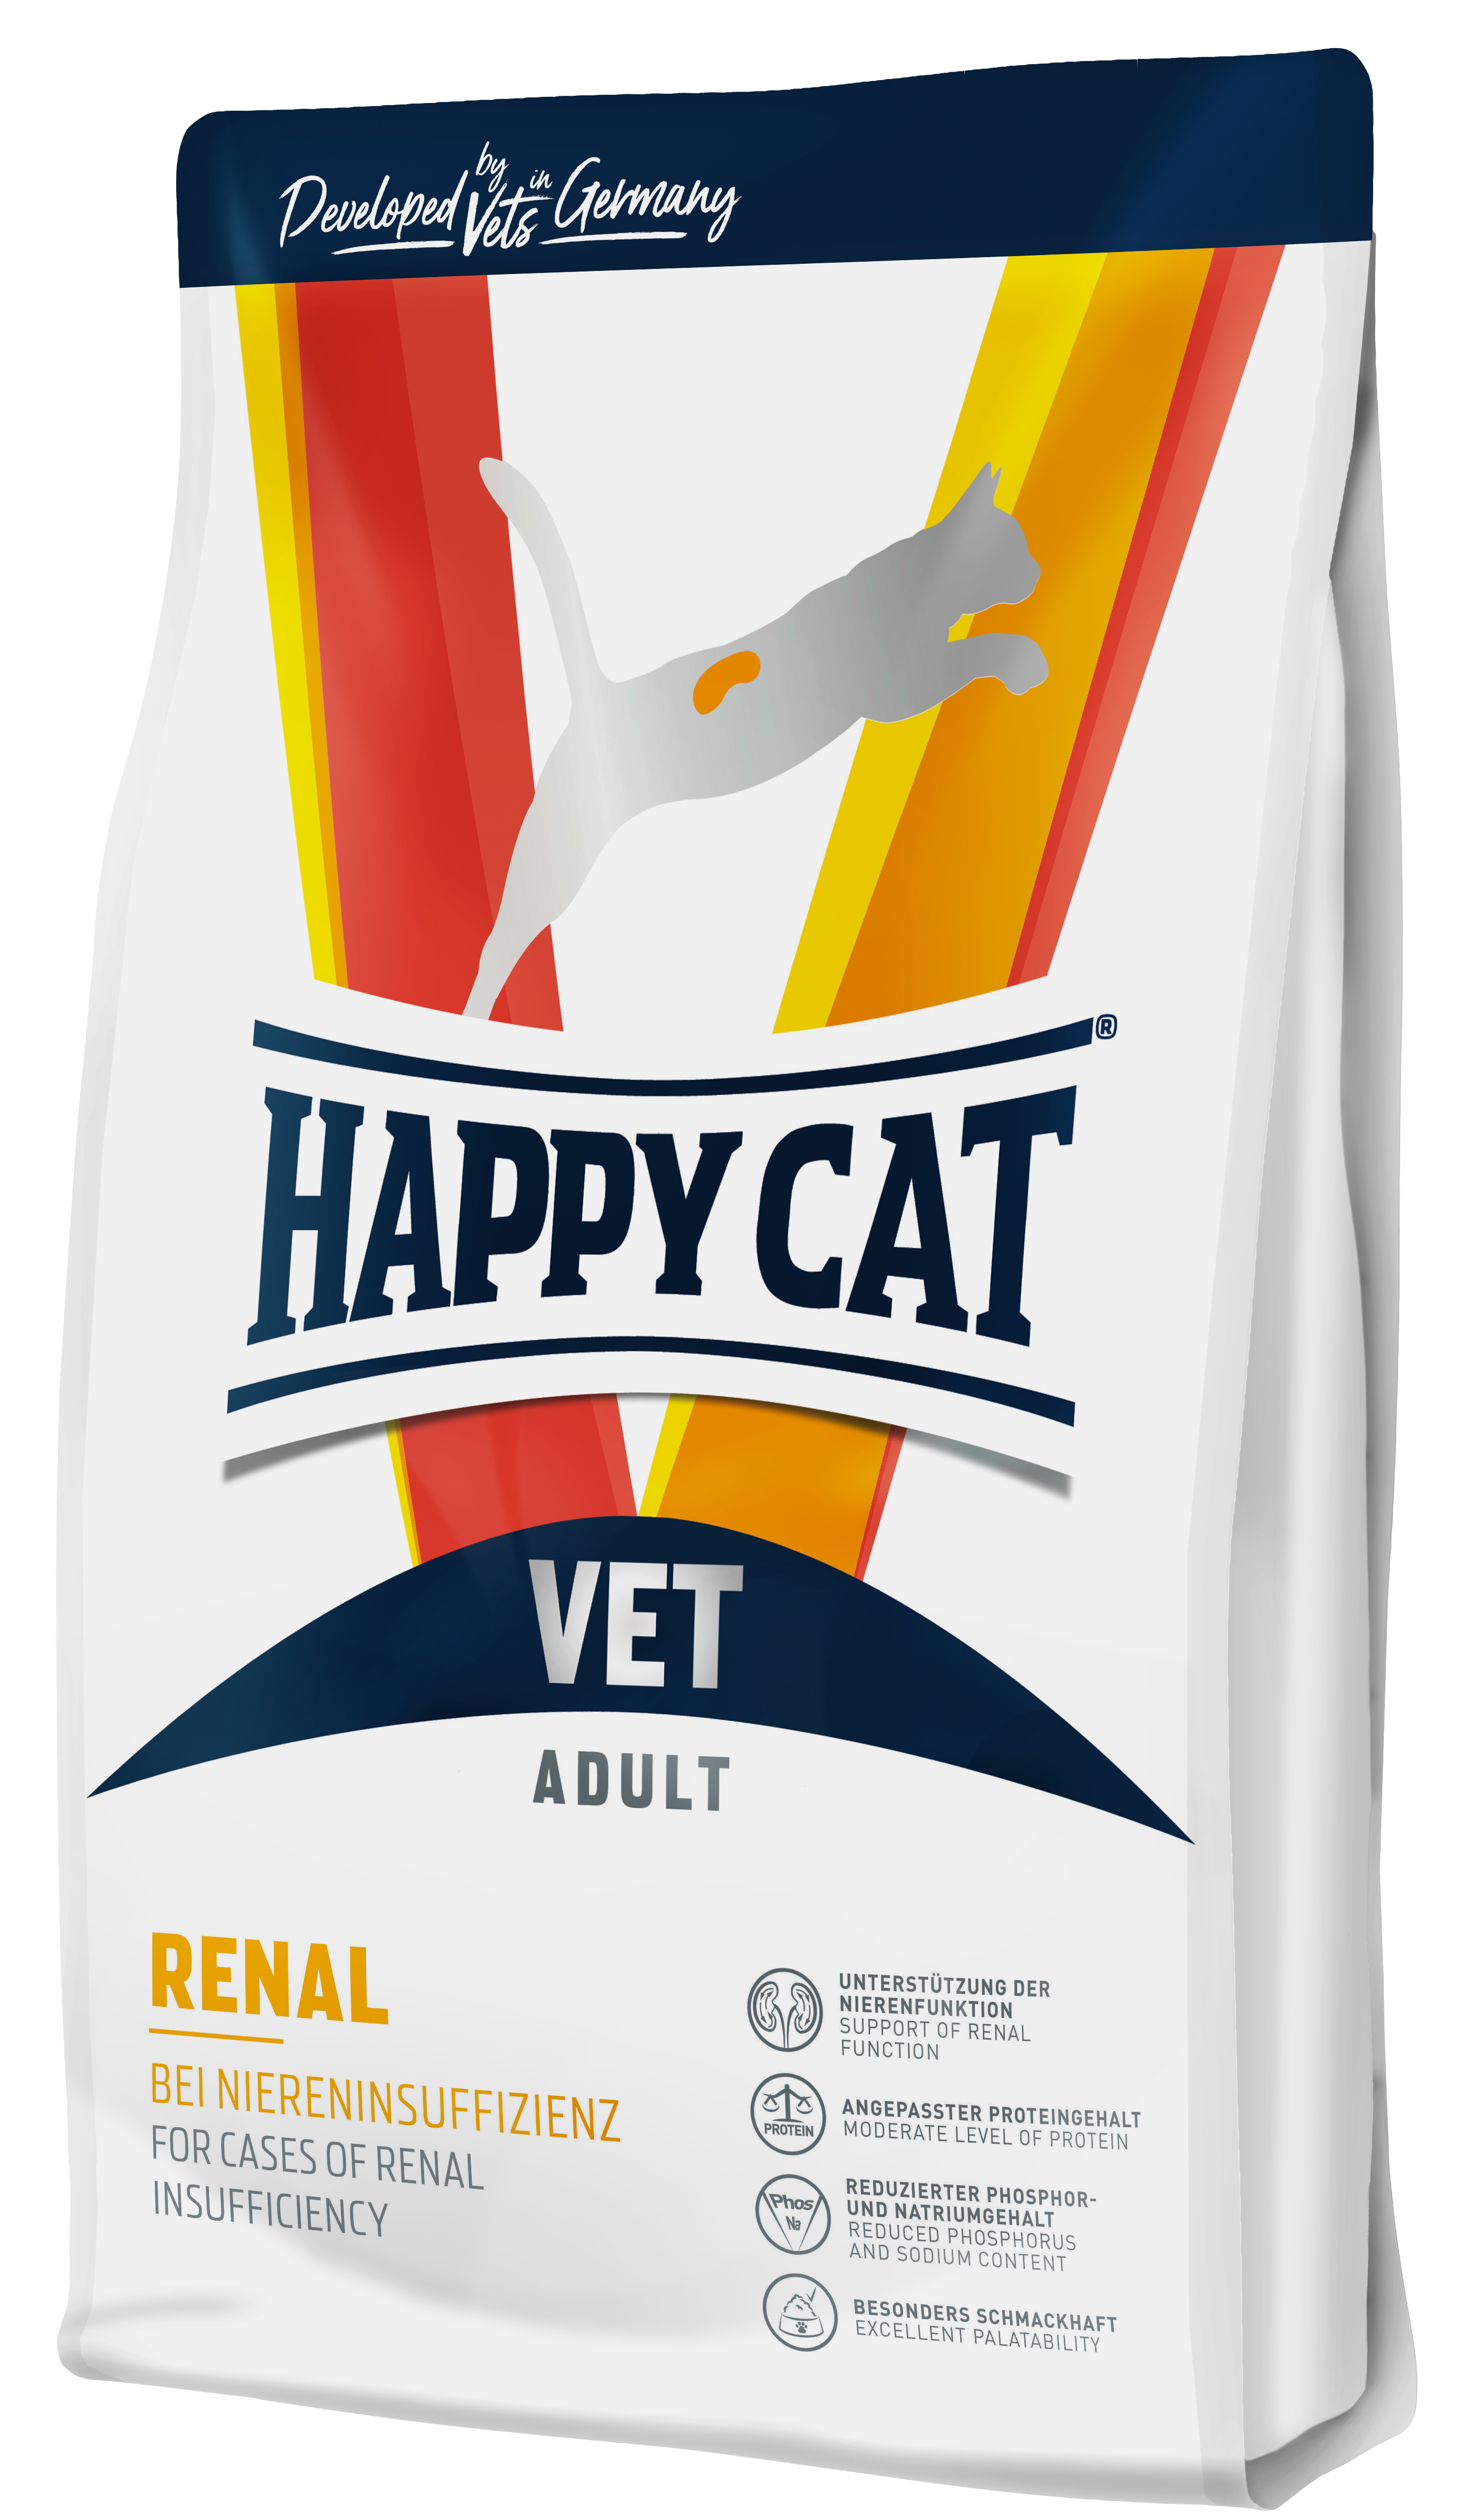 Корм Happy Cat Vet Renal для кошек. Ветеринарная диета при почечной недостаточности